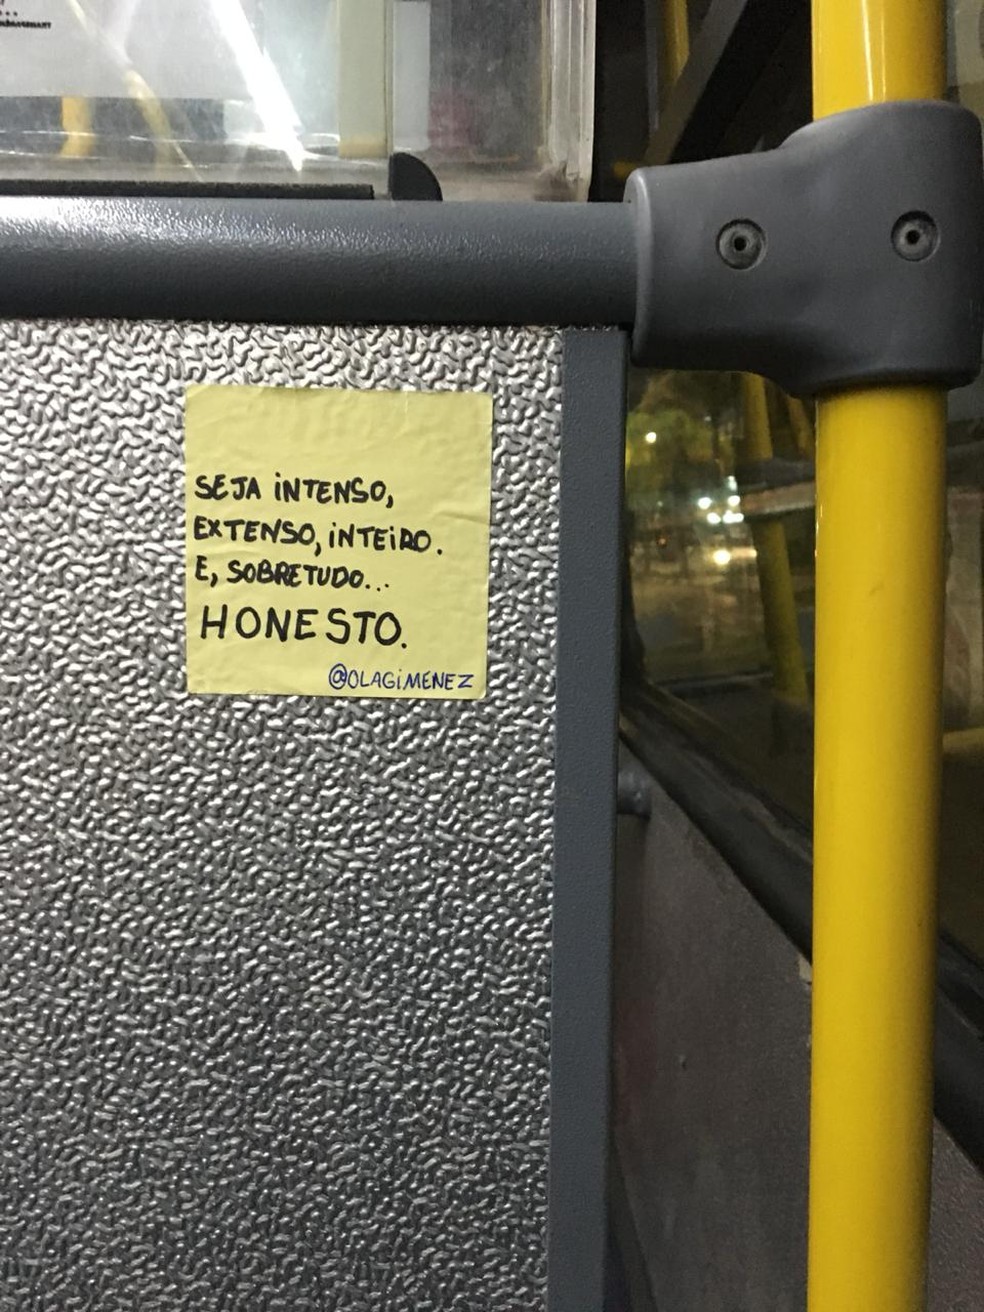 Fotógrafa colou bilhetes com mensagens positivas em ônibus de Santos, SP — Foto: Arquivo Pessoal/Paola Gimenez